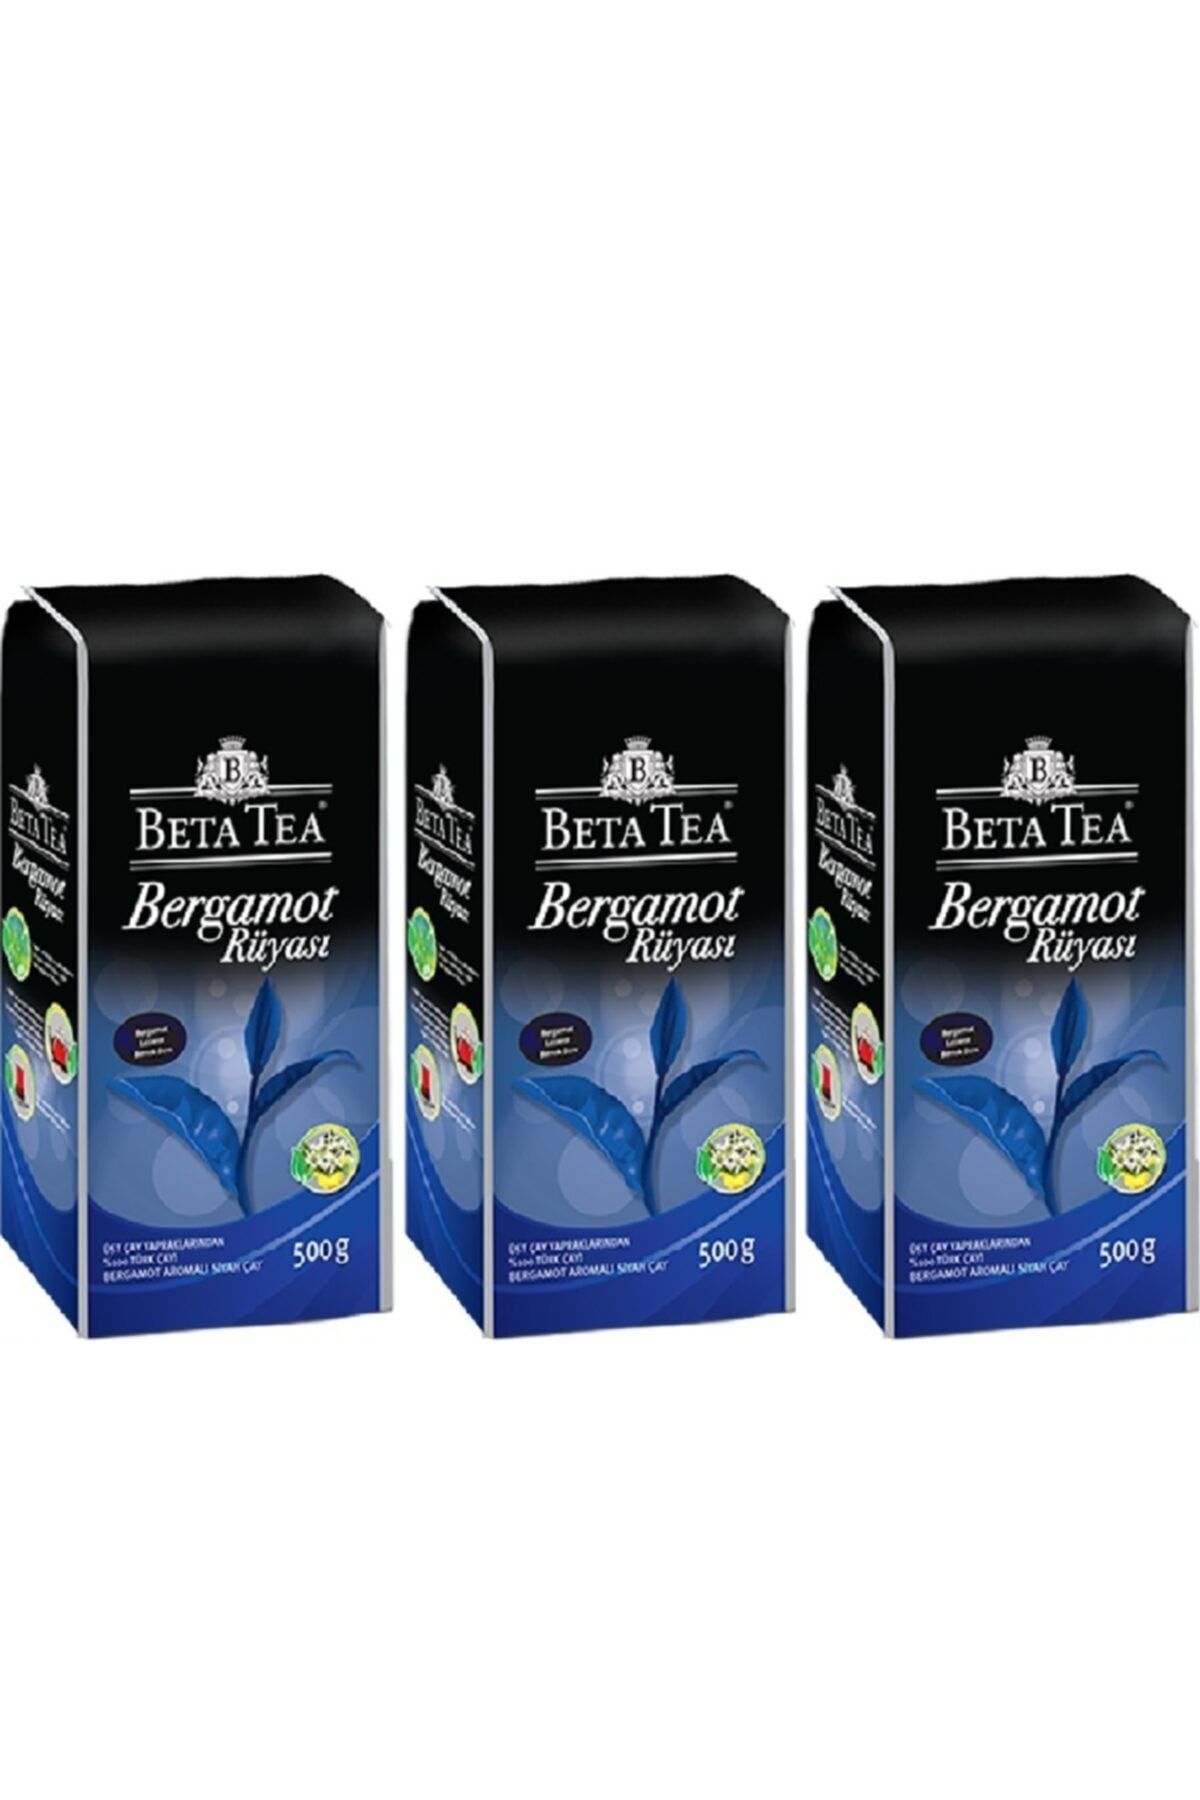 Beta Tea Bergamot Rüyası   500 gr   3 Adet 1,5 kg